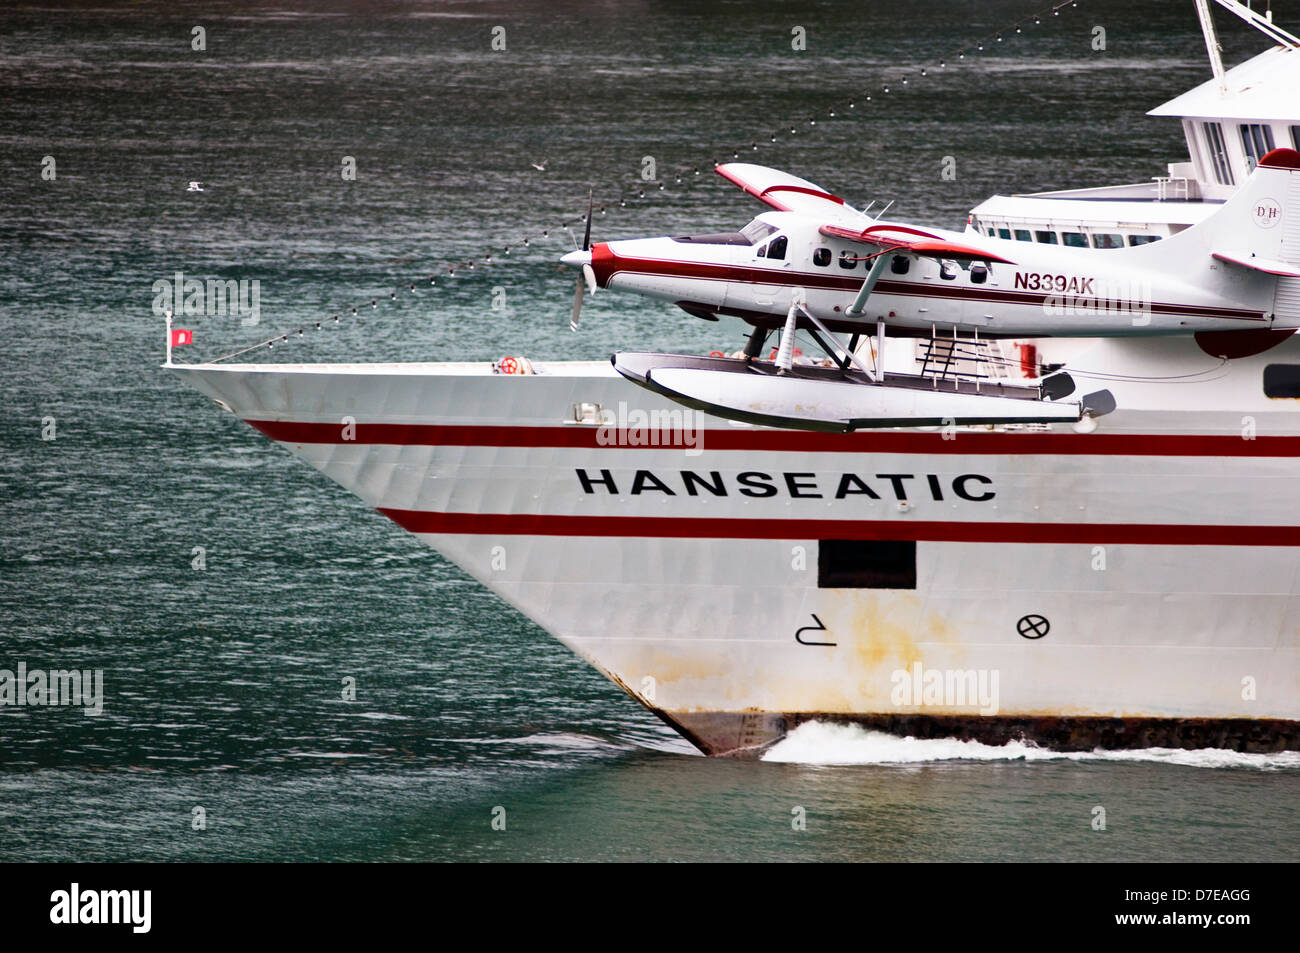 Ein Sightseeing Wasserflugzeug fliegen in der Nähe der Hanseatic cruise Schiff in der Nähe von Juneau, Alaska Stockfoto